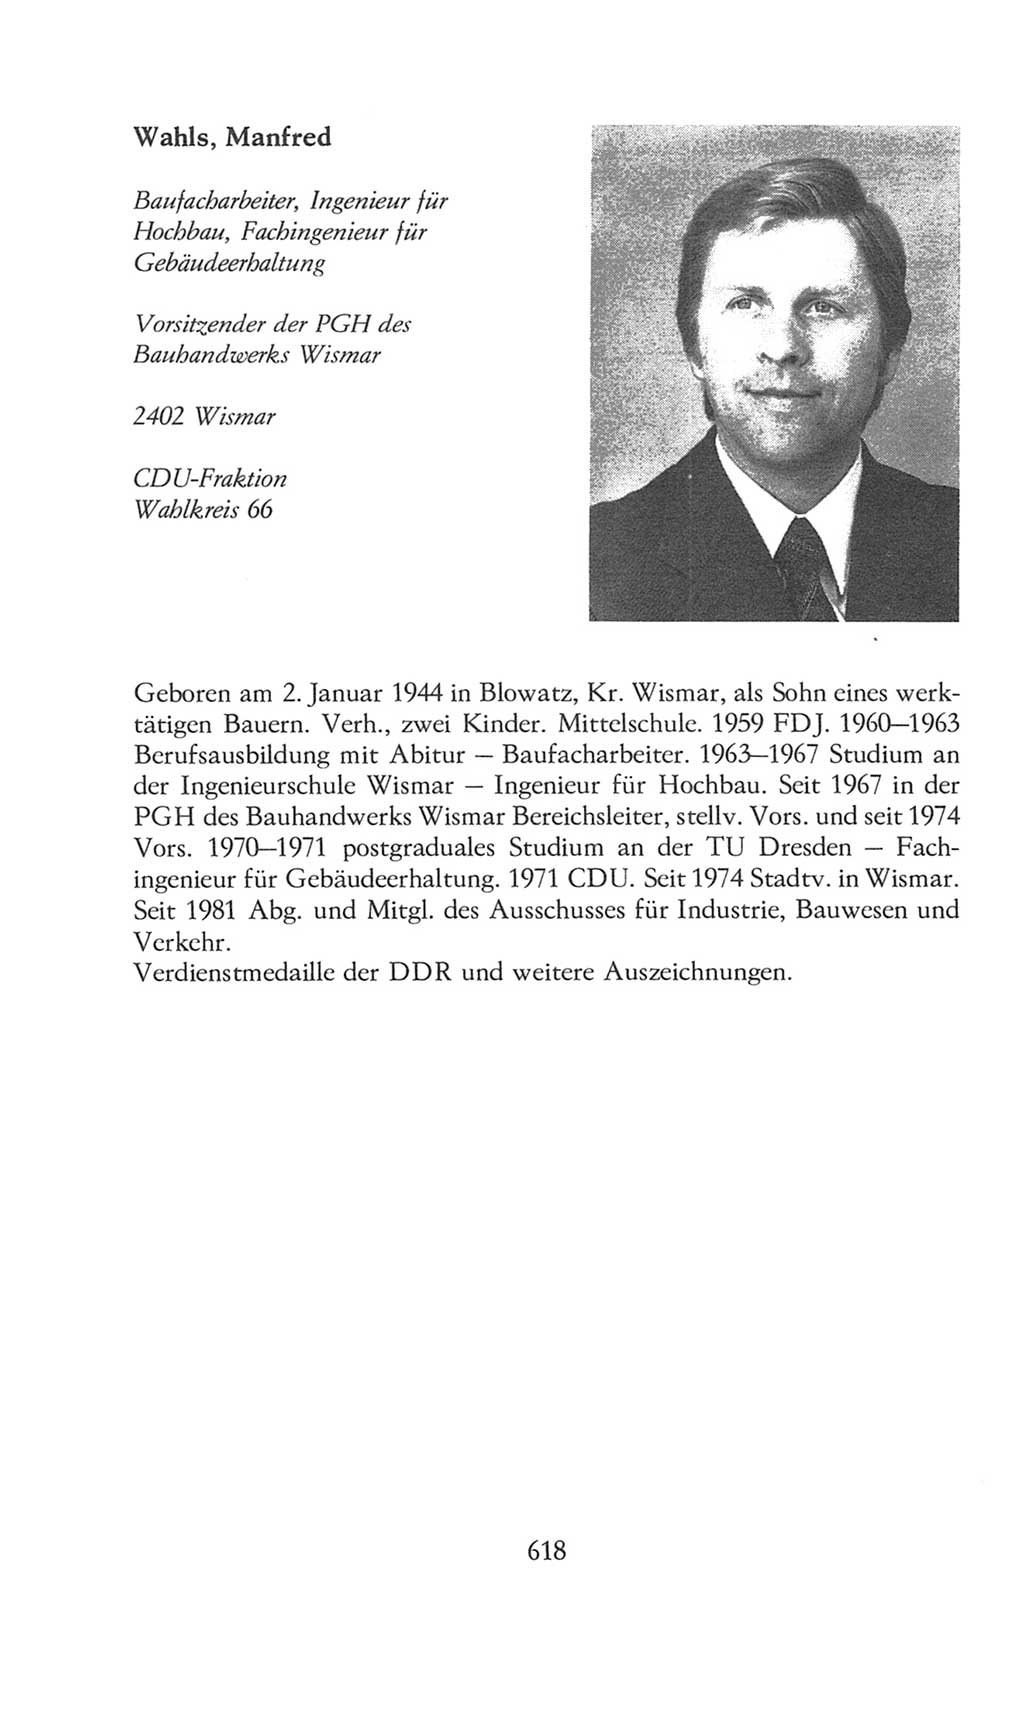 Volkskammer (VK) der Deutschen Demokratischen Republik (DDR), 8. Wahlperiode 1981-1986, Seite 618 (VK. DDR 8. WP. 1981-1986, S. 618)